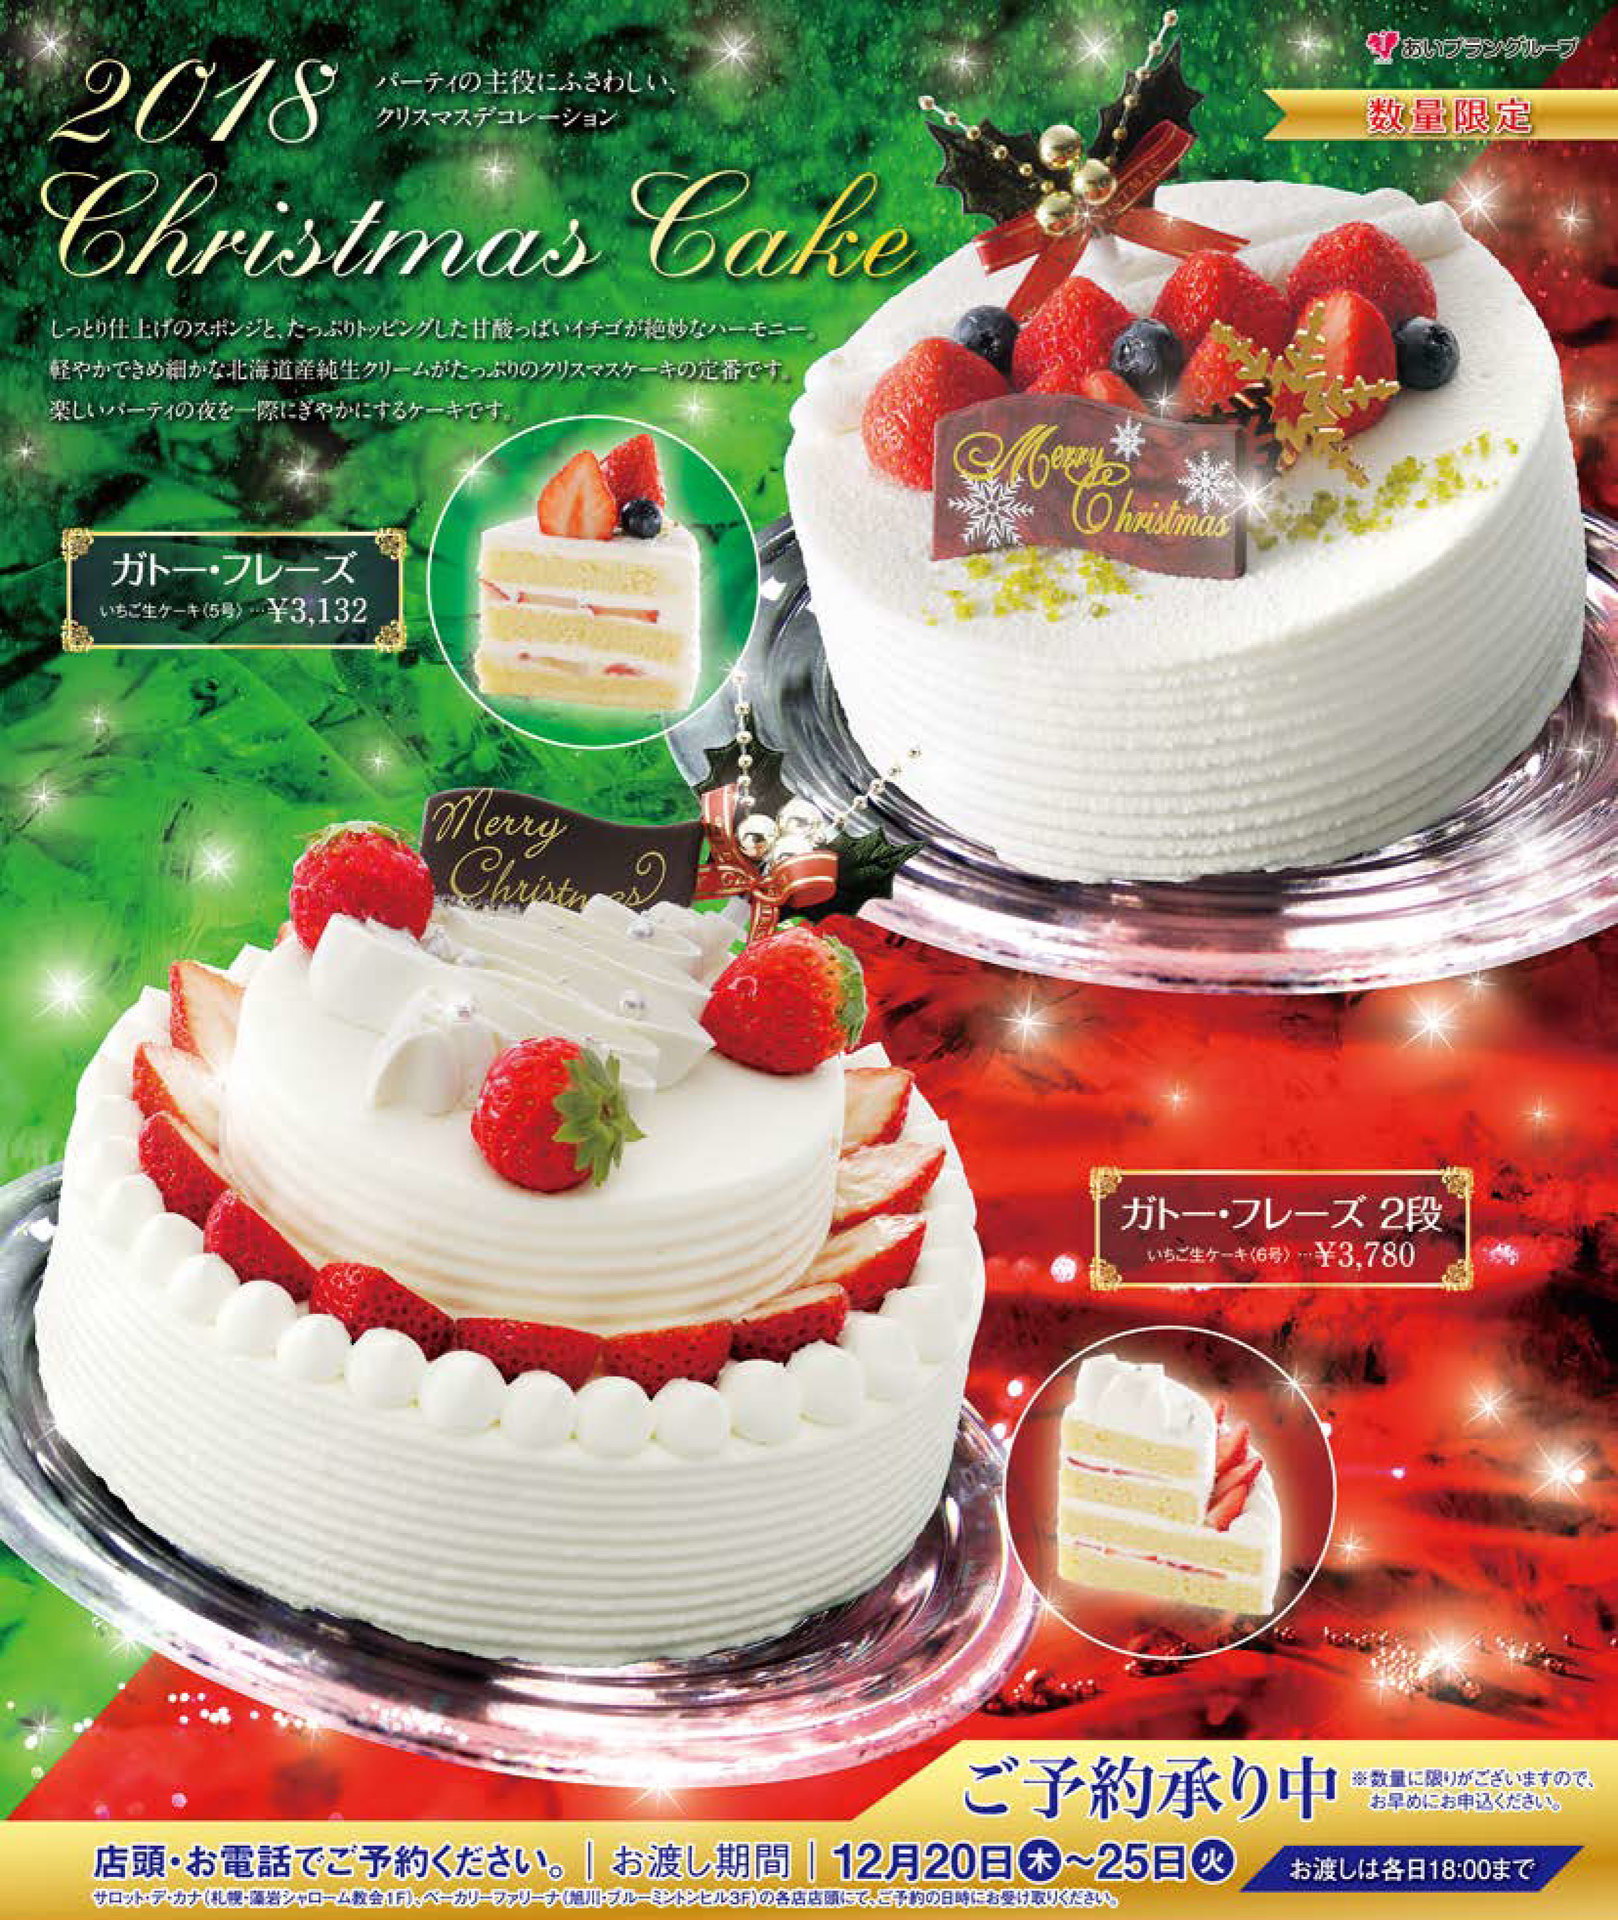 北海道旭川リゾートウエディング ブルーミントンヒル スタッフブログ 18年 クリスマスケーキのご予約は旭川市のレストラン リストランテ フォレスタ ヴェルデ で